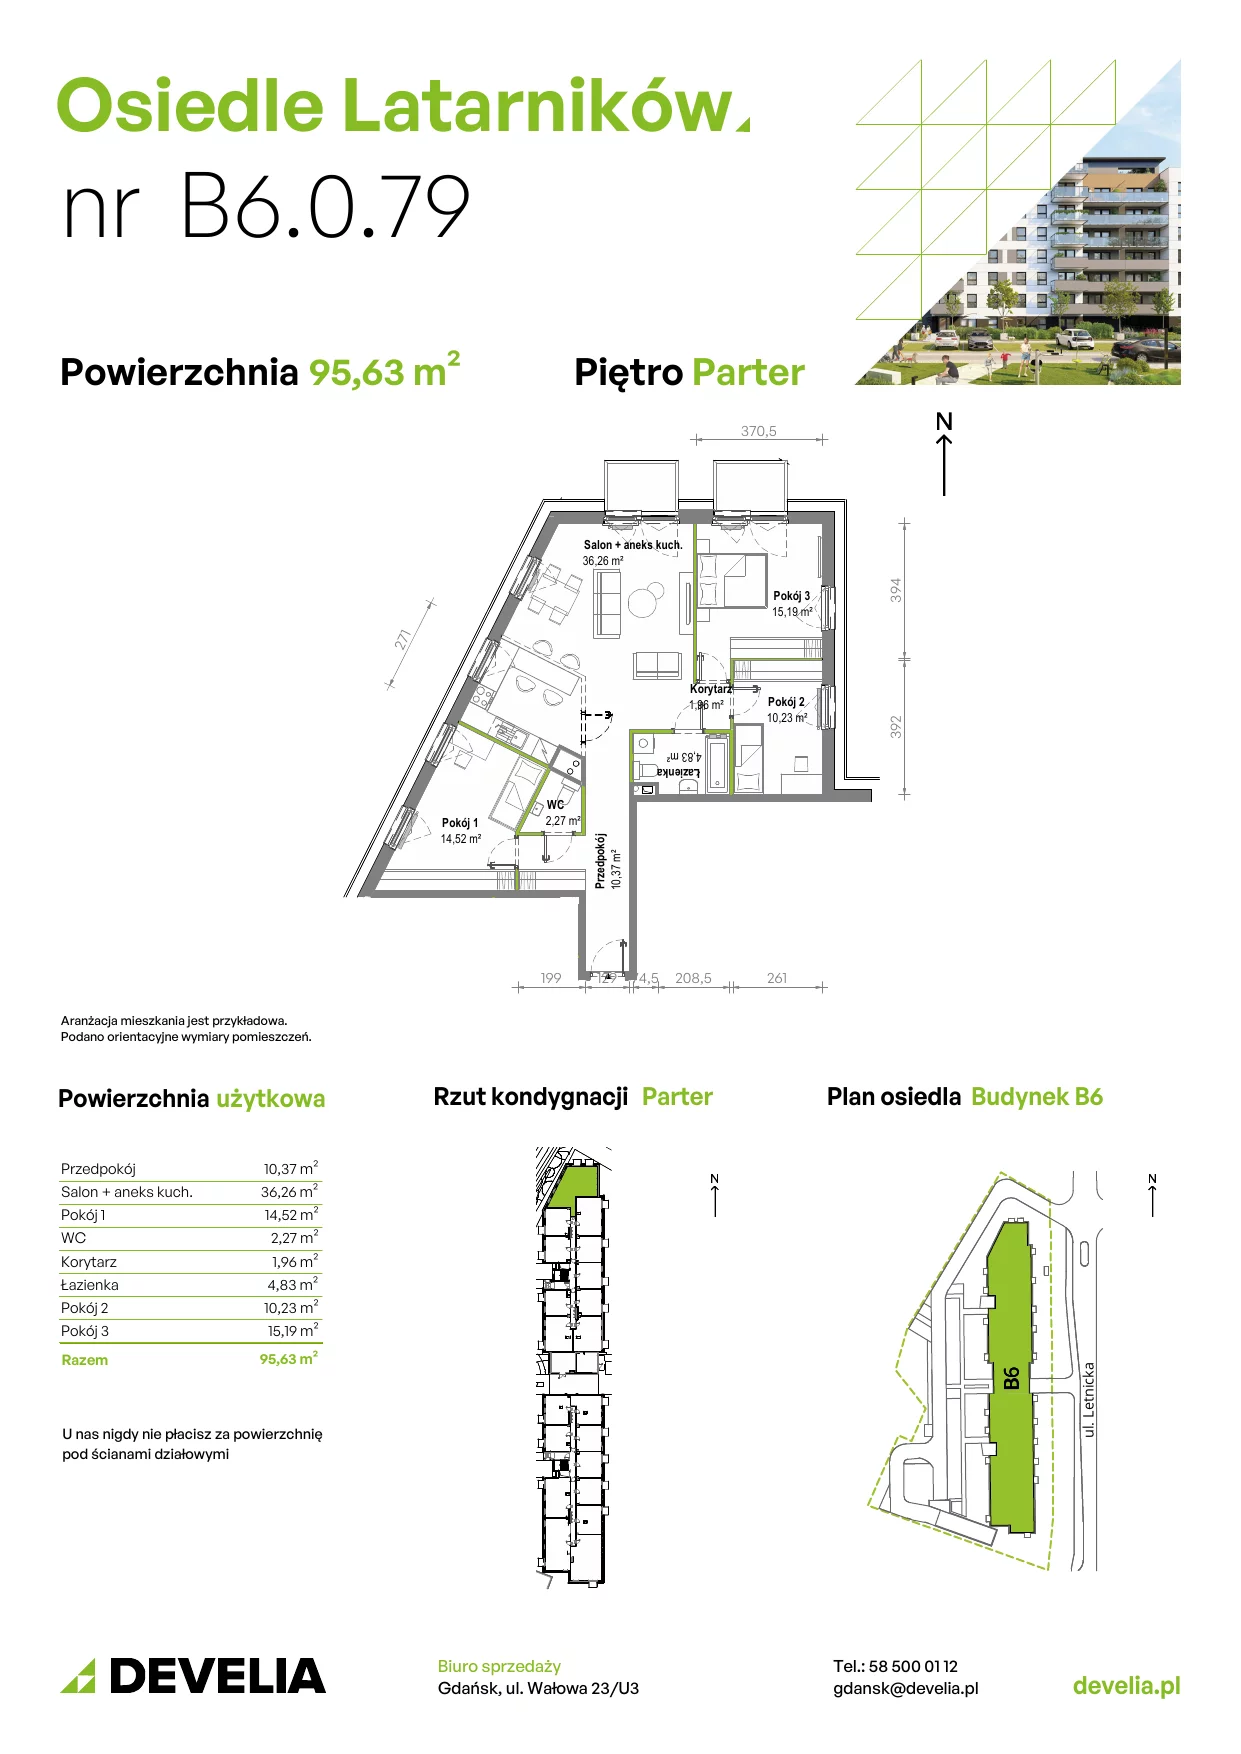 Mieszkanie 95,25 m², parter, oferta nr B6.0.079, Osiedle Latarników, Gdańsk, Letnica, ul. Letnicka 1